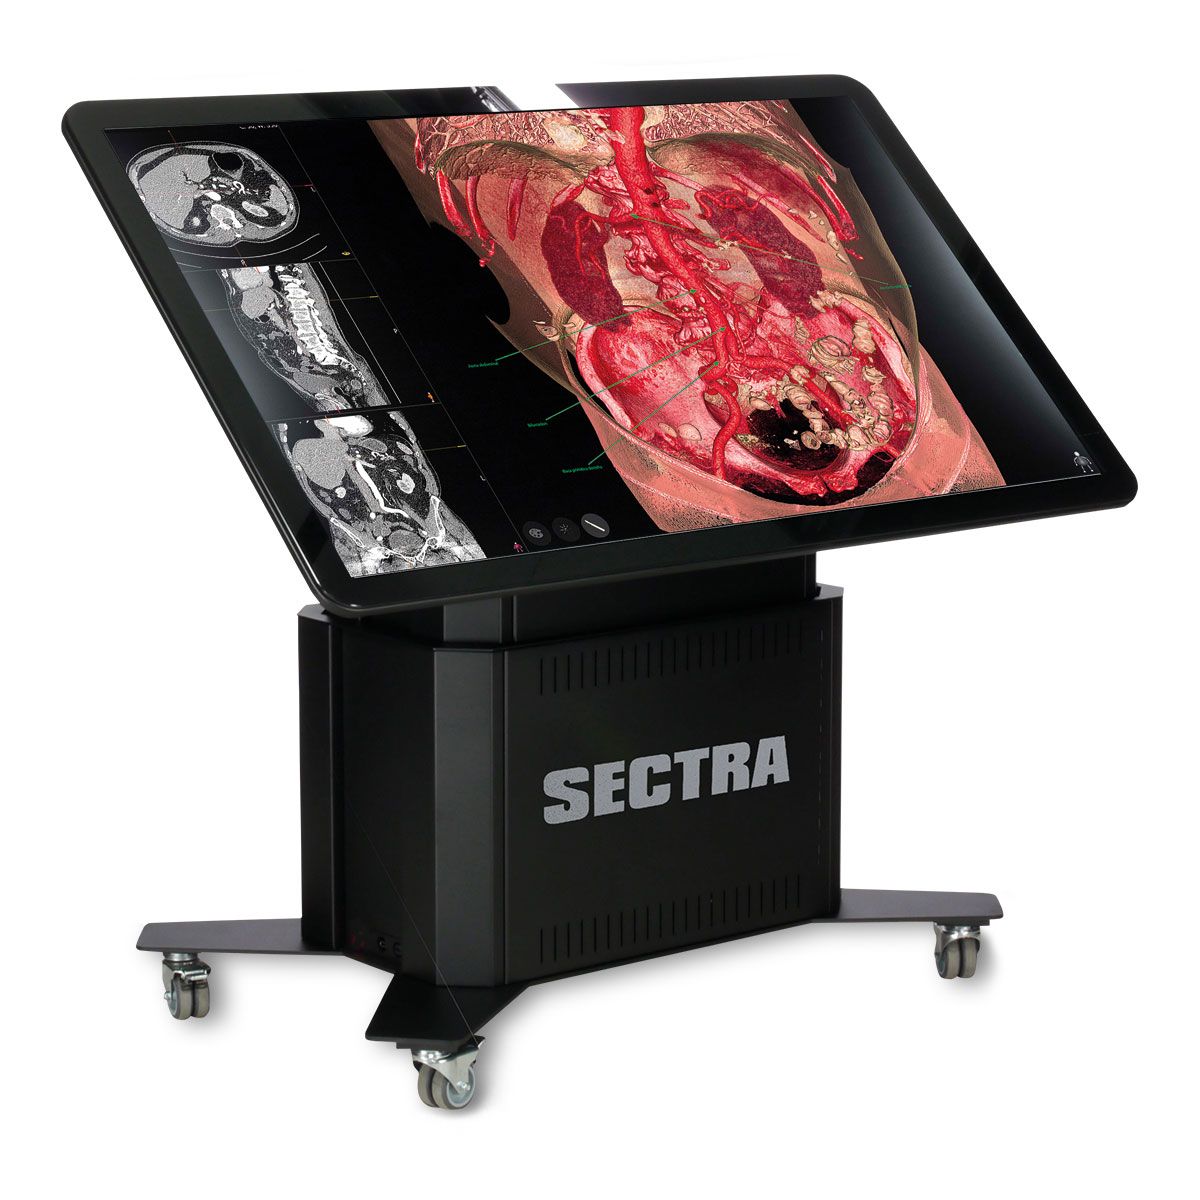 SECTRA виртуальный стол для анатомирования - Образовательный портал сроком на 1 год